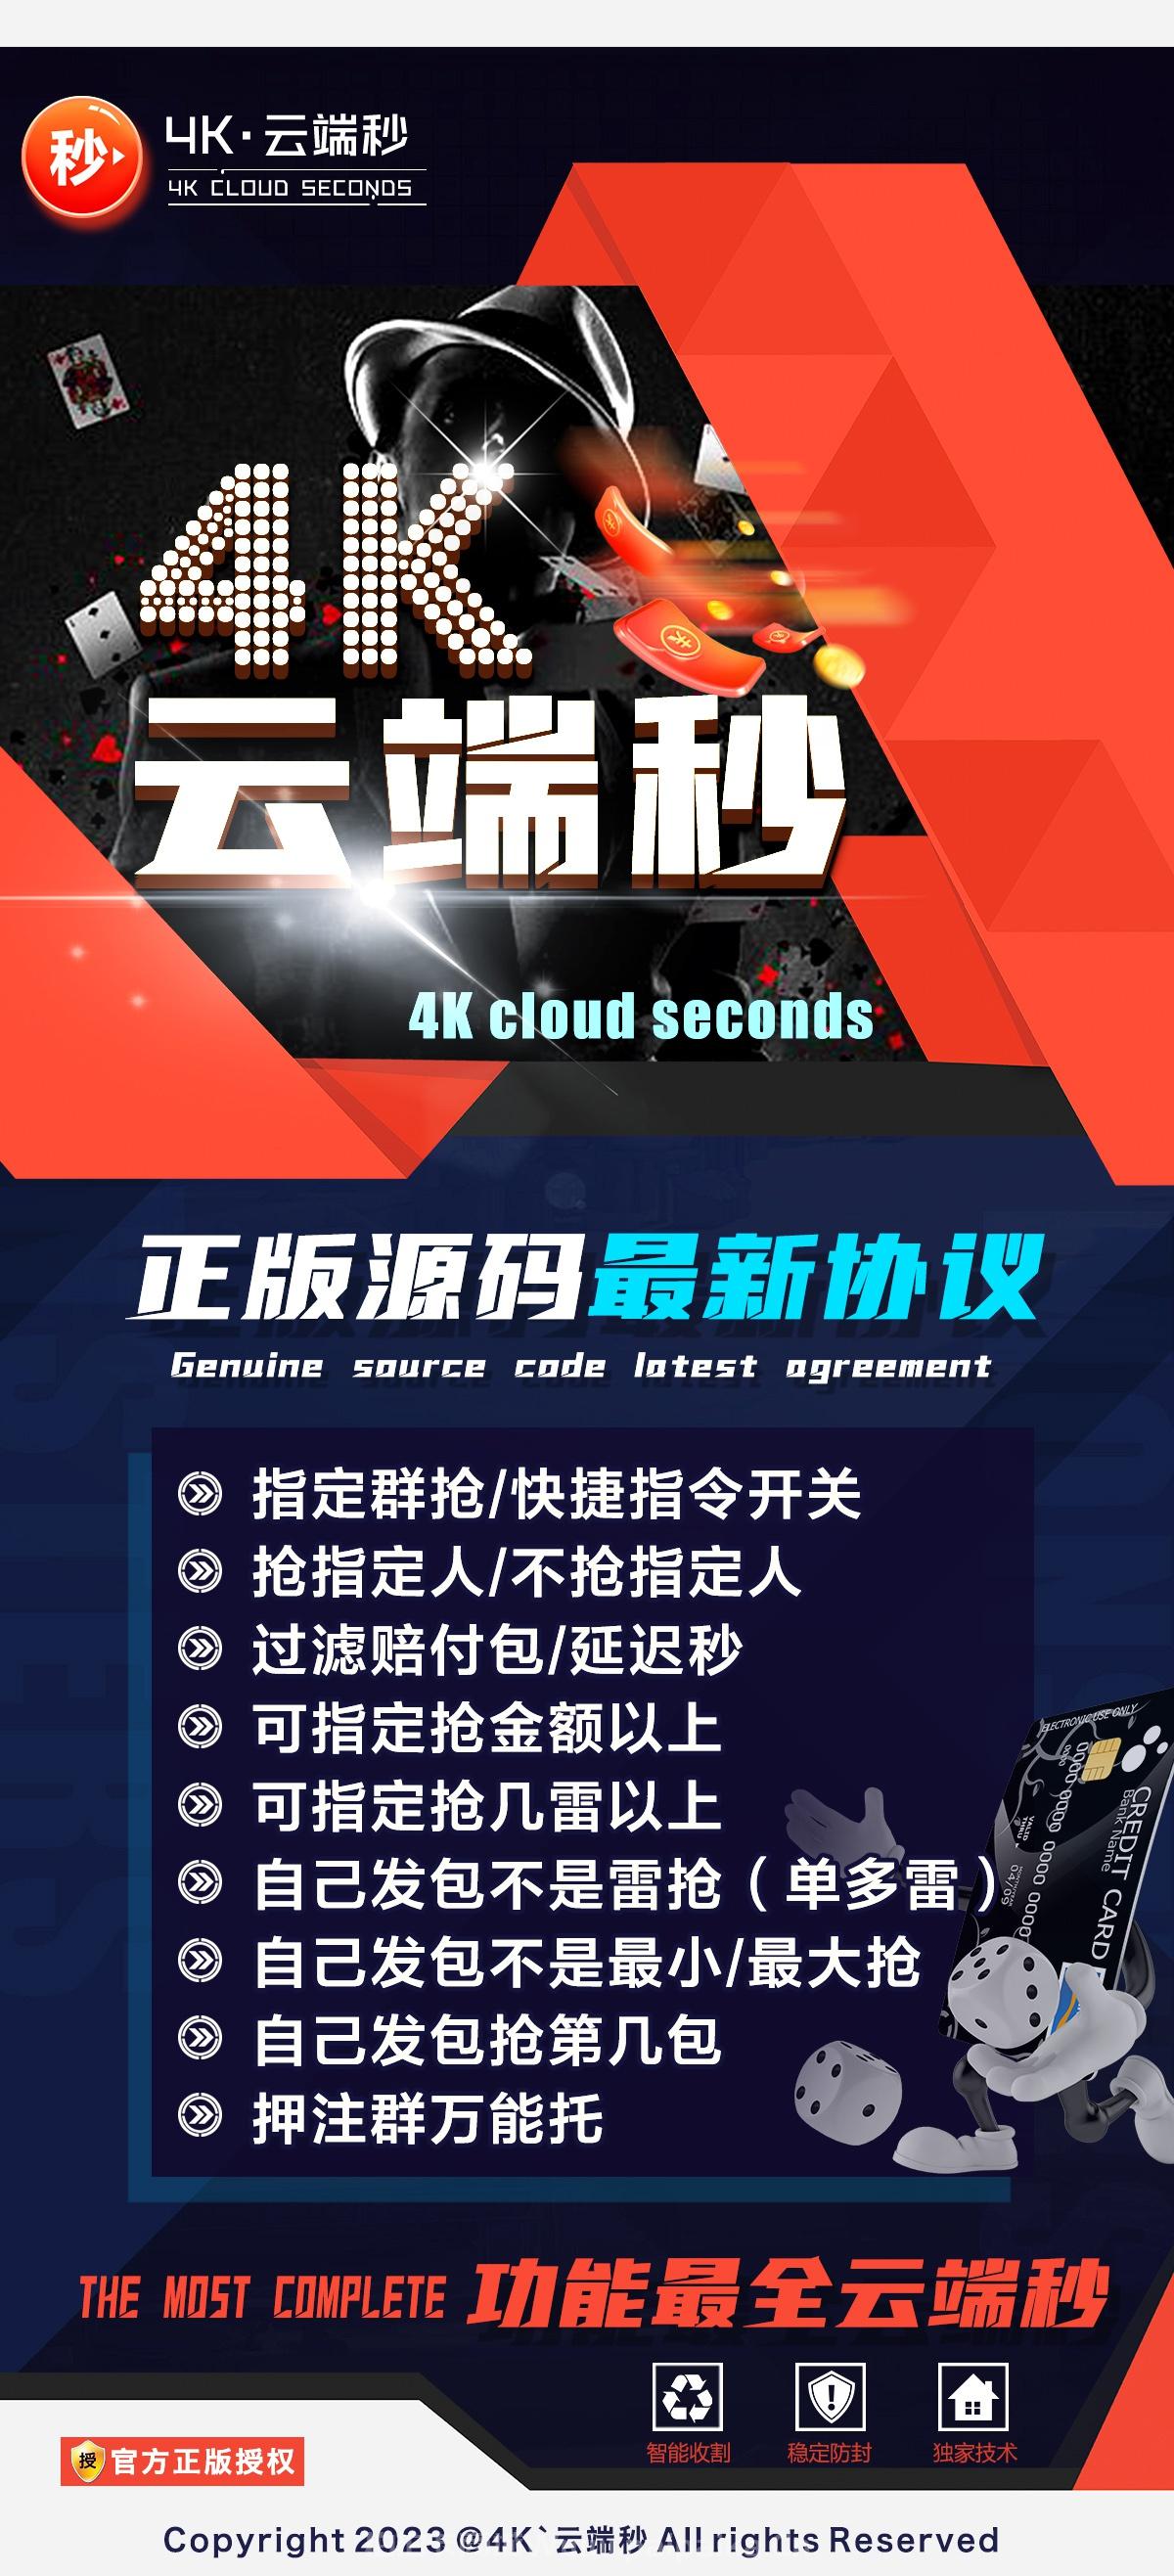 4K云端秒官网-激活购买以及登录-1500点3000点5000点